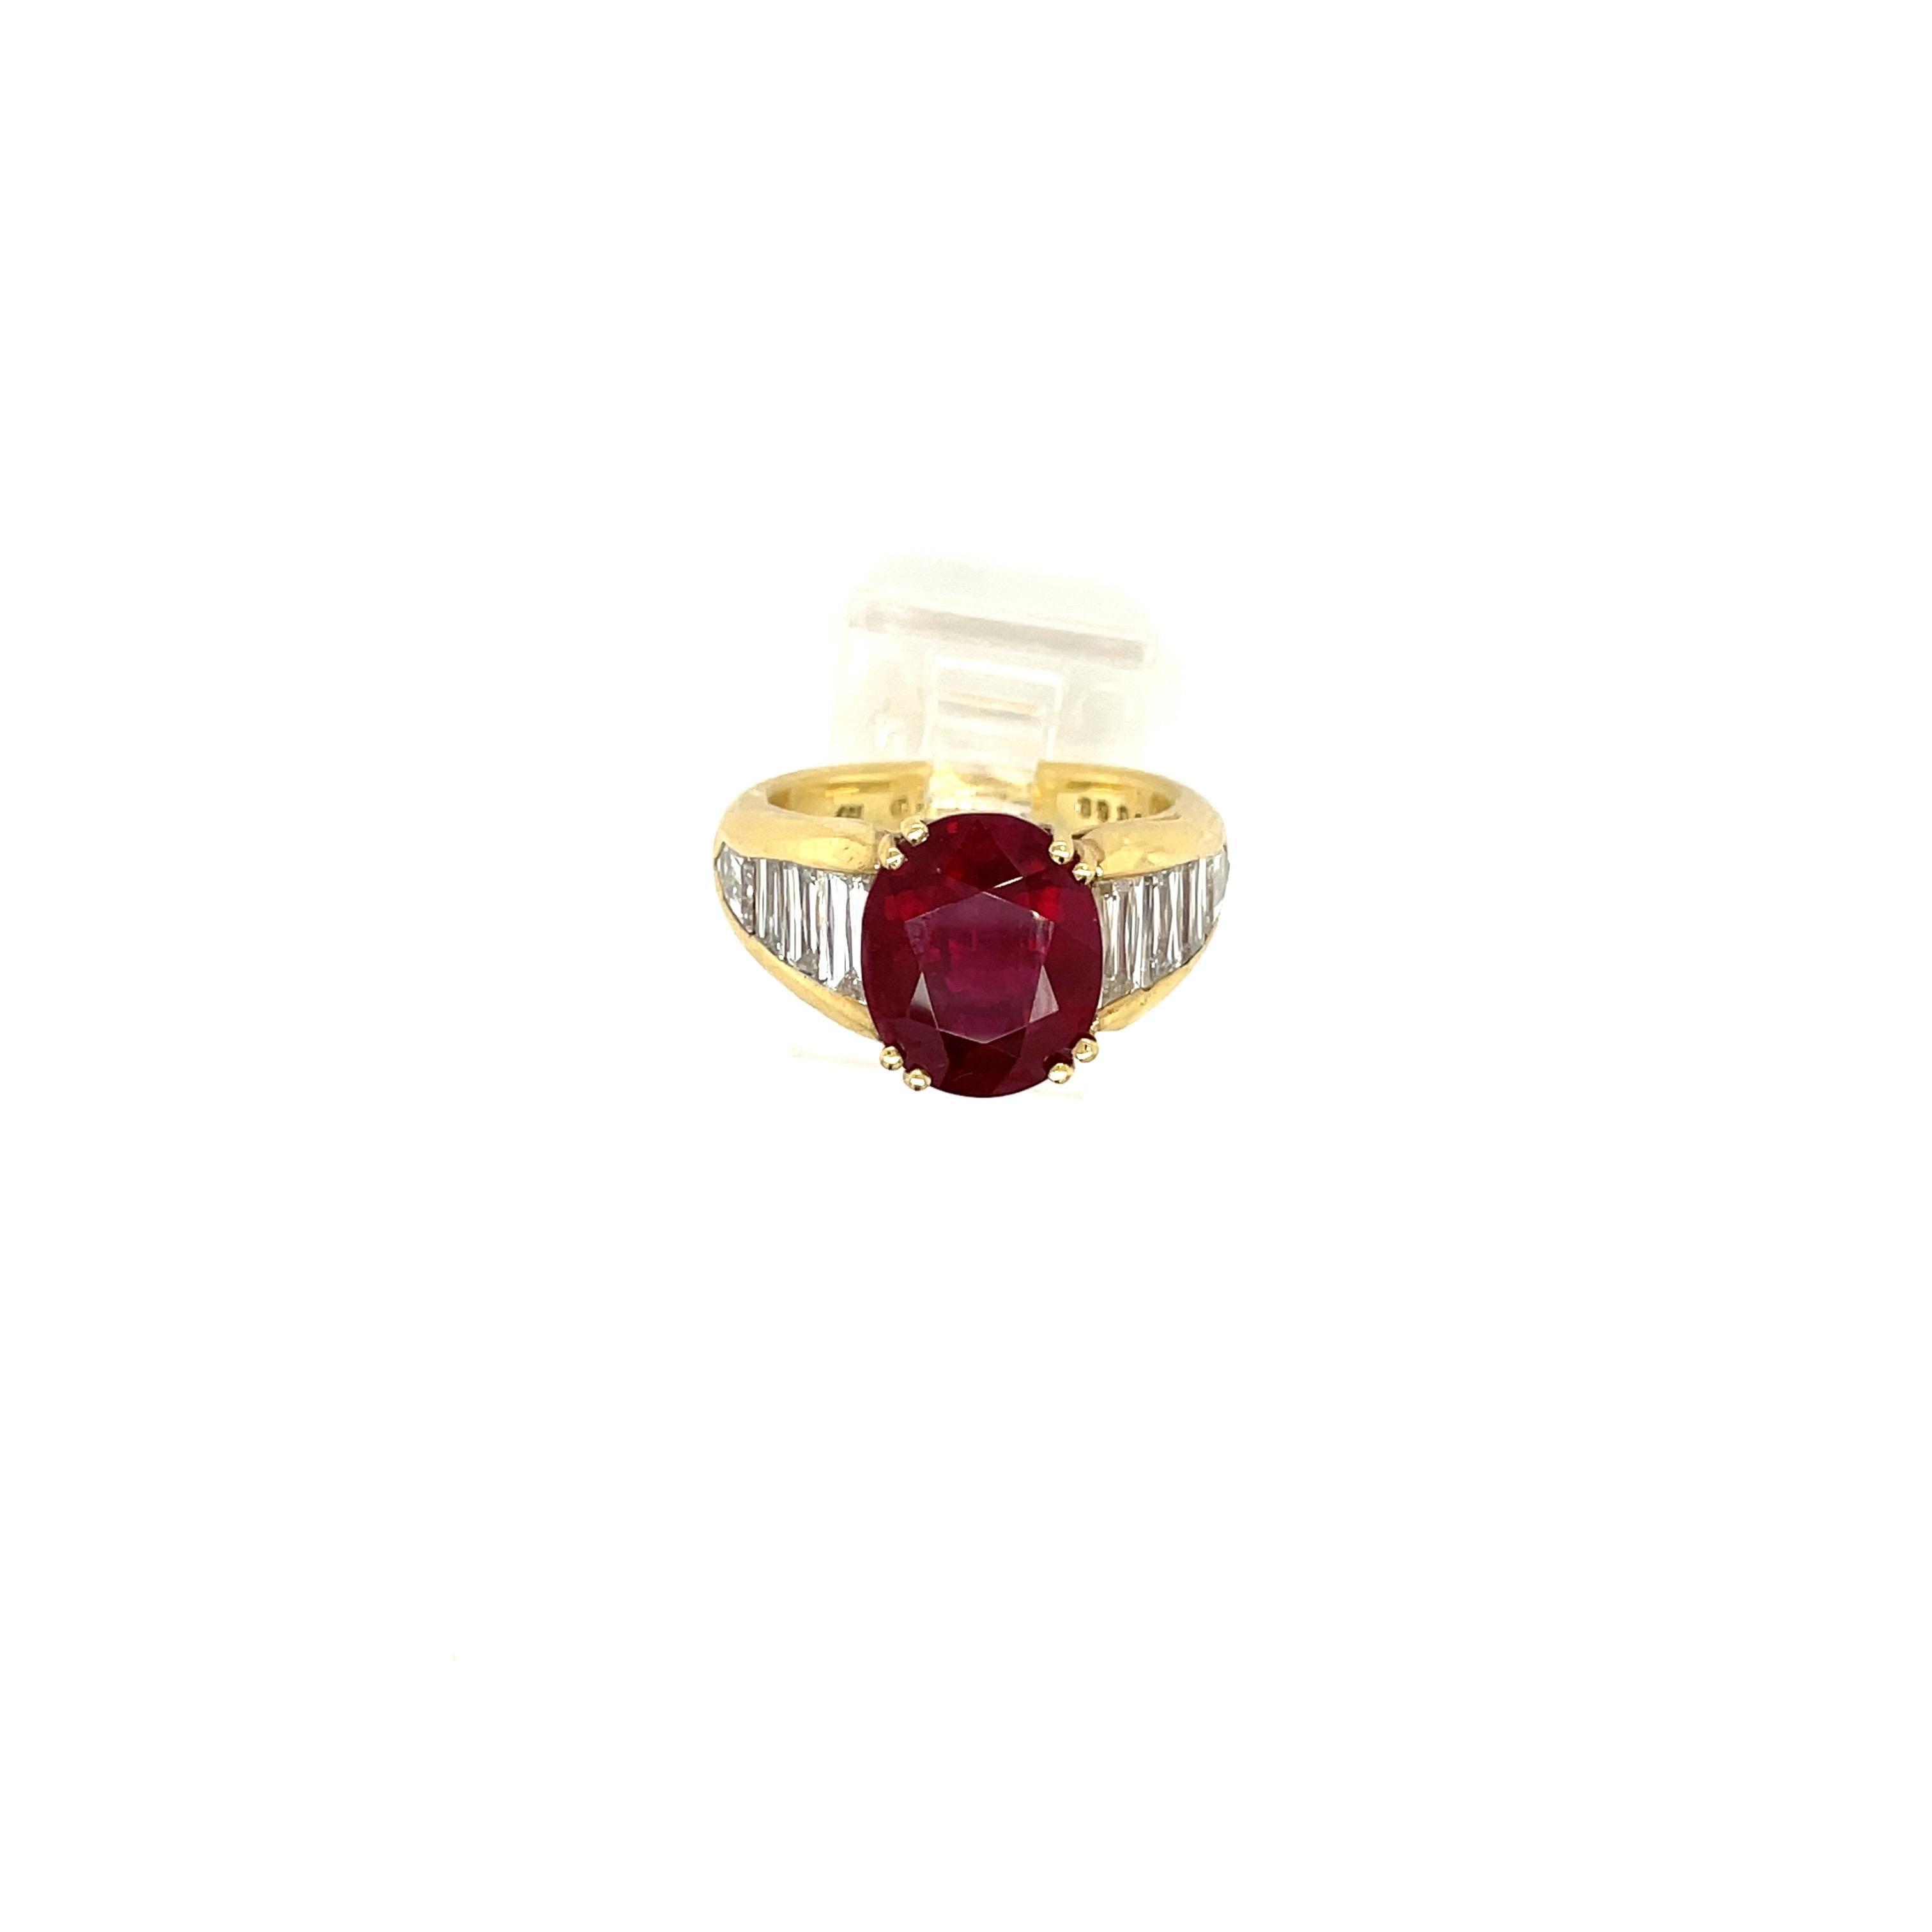 Im Mittelpunkt dieses Rings aus 18 Karat Gelbgold steht ein prächtiger ovaler Rubin von 5,96 Karat. Die Fassung ist mit 3 Baguetten-Diamanten auf jeder Seite und einem kugelförmigen Diamanten an der Unterseite gestaltet. Diese Fassung hebt das